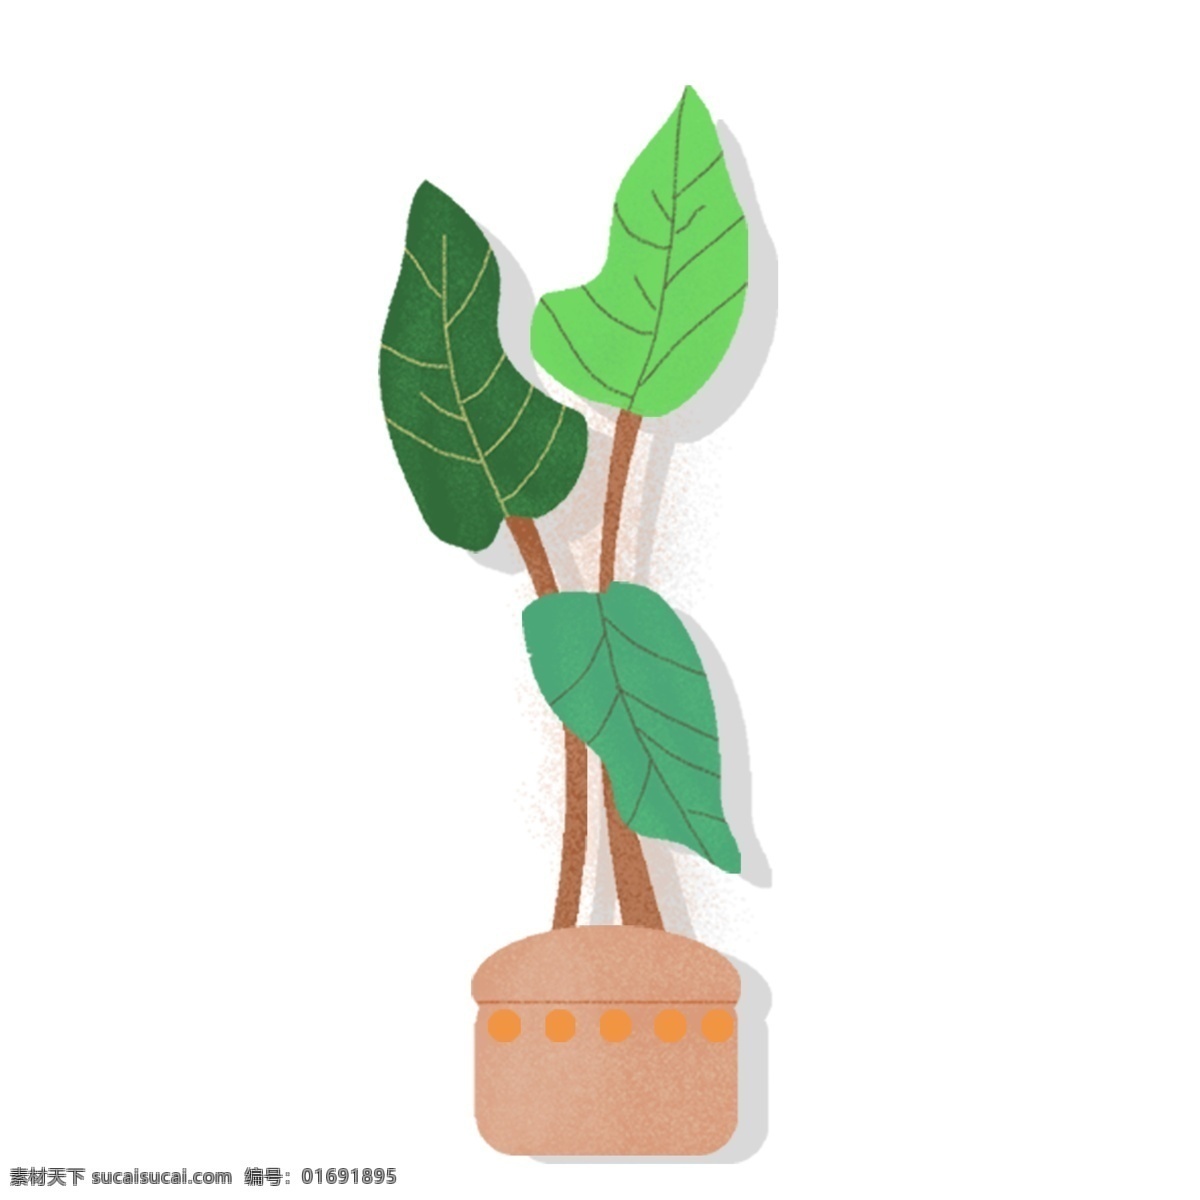 简约 绿叶 盆栽 植物 叶子 绘画 插画元素 设计元素 卡通 彩色 小清新 精致